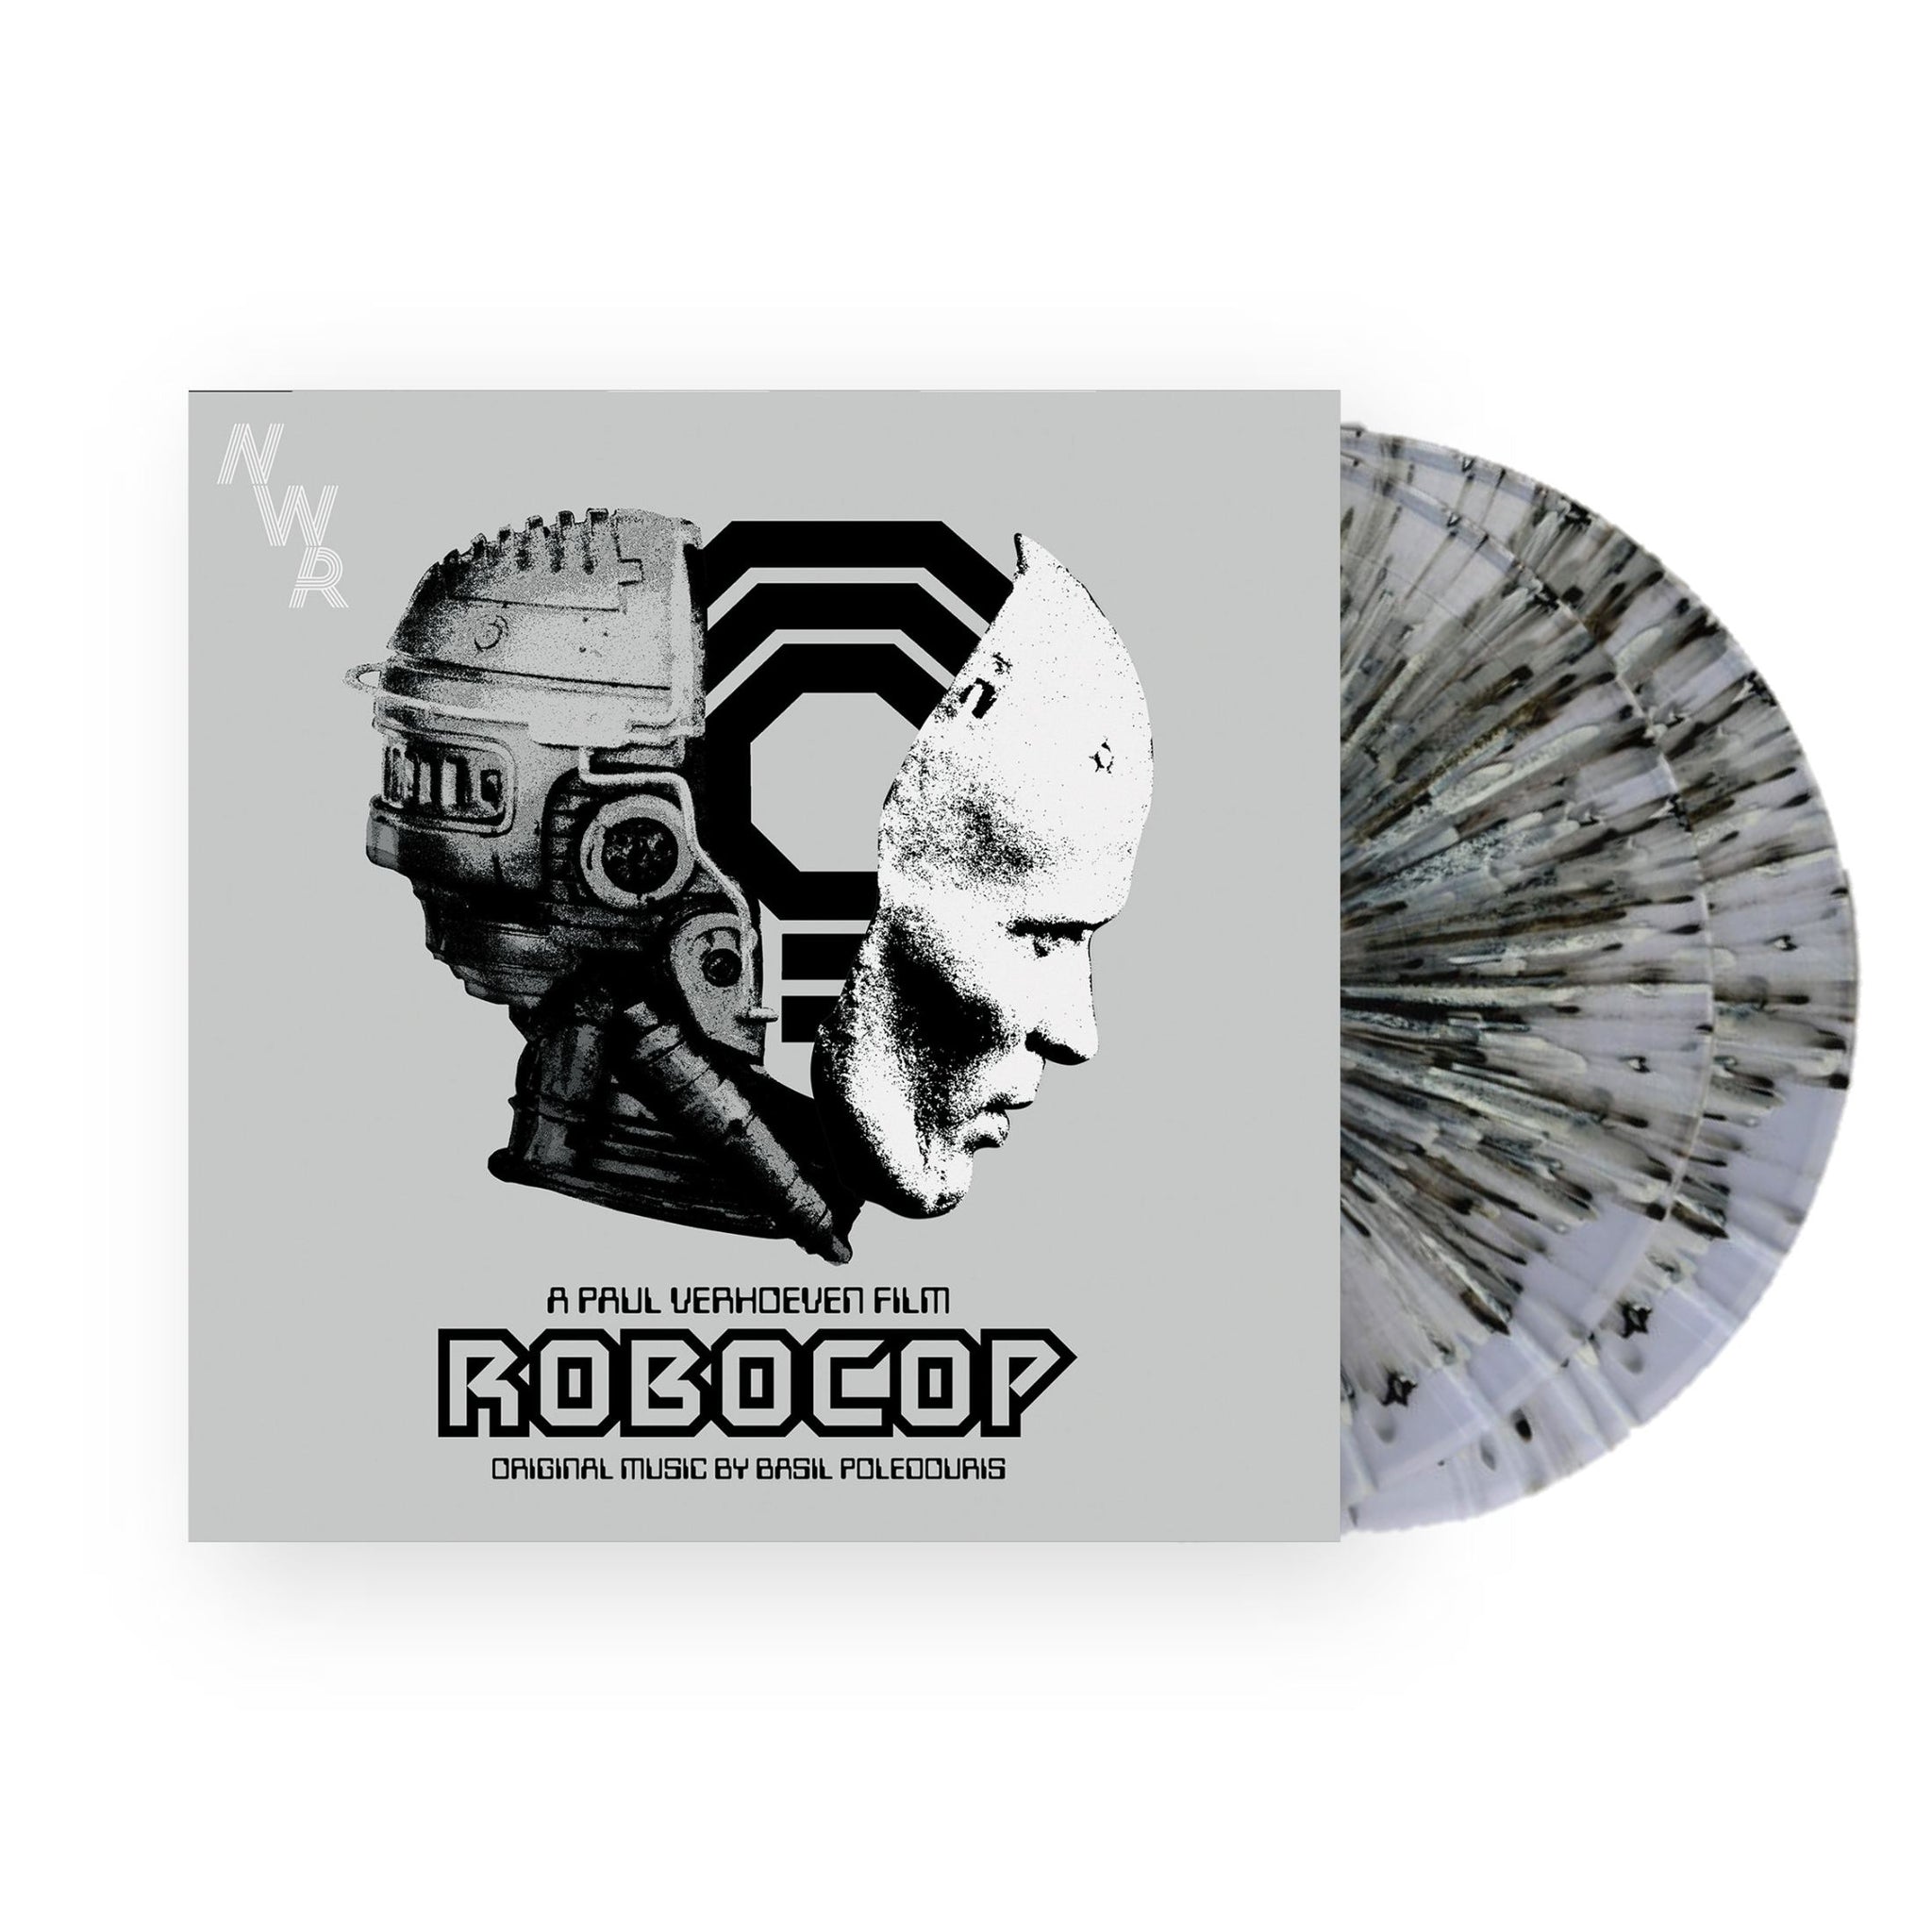 Robocop Score by Basil Poledouris 2xLP (Splatter Vinyl)